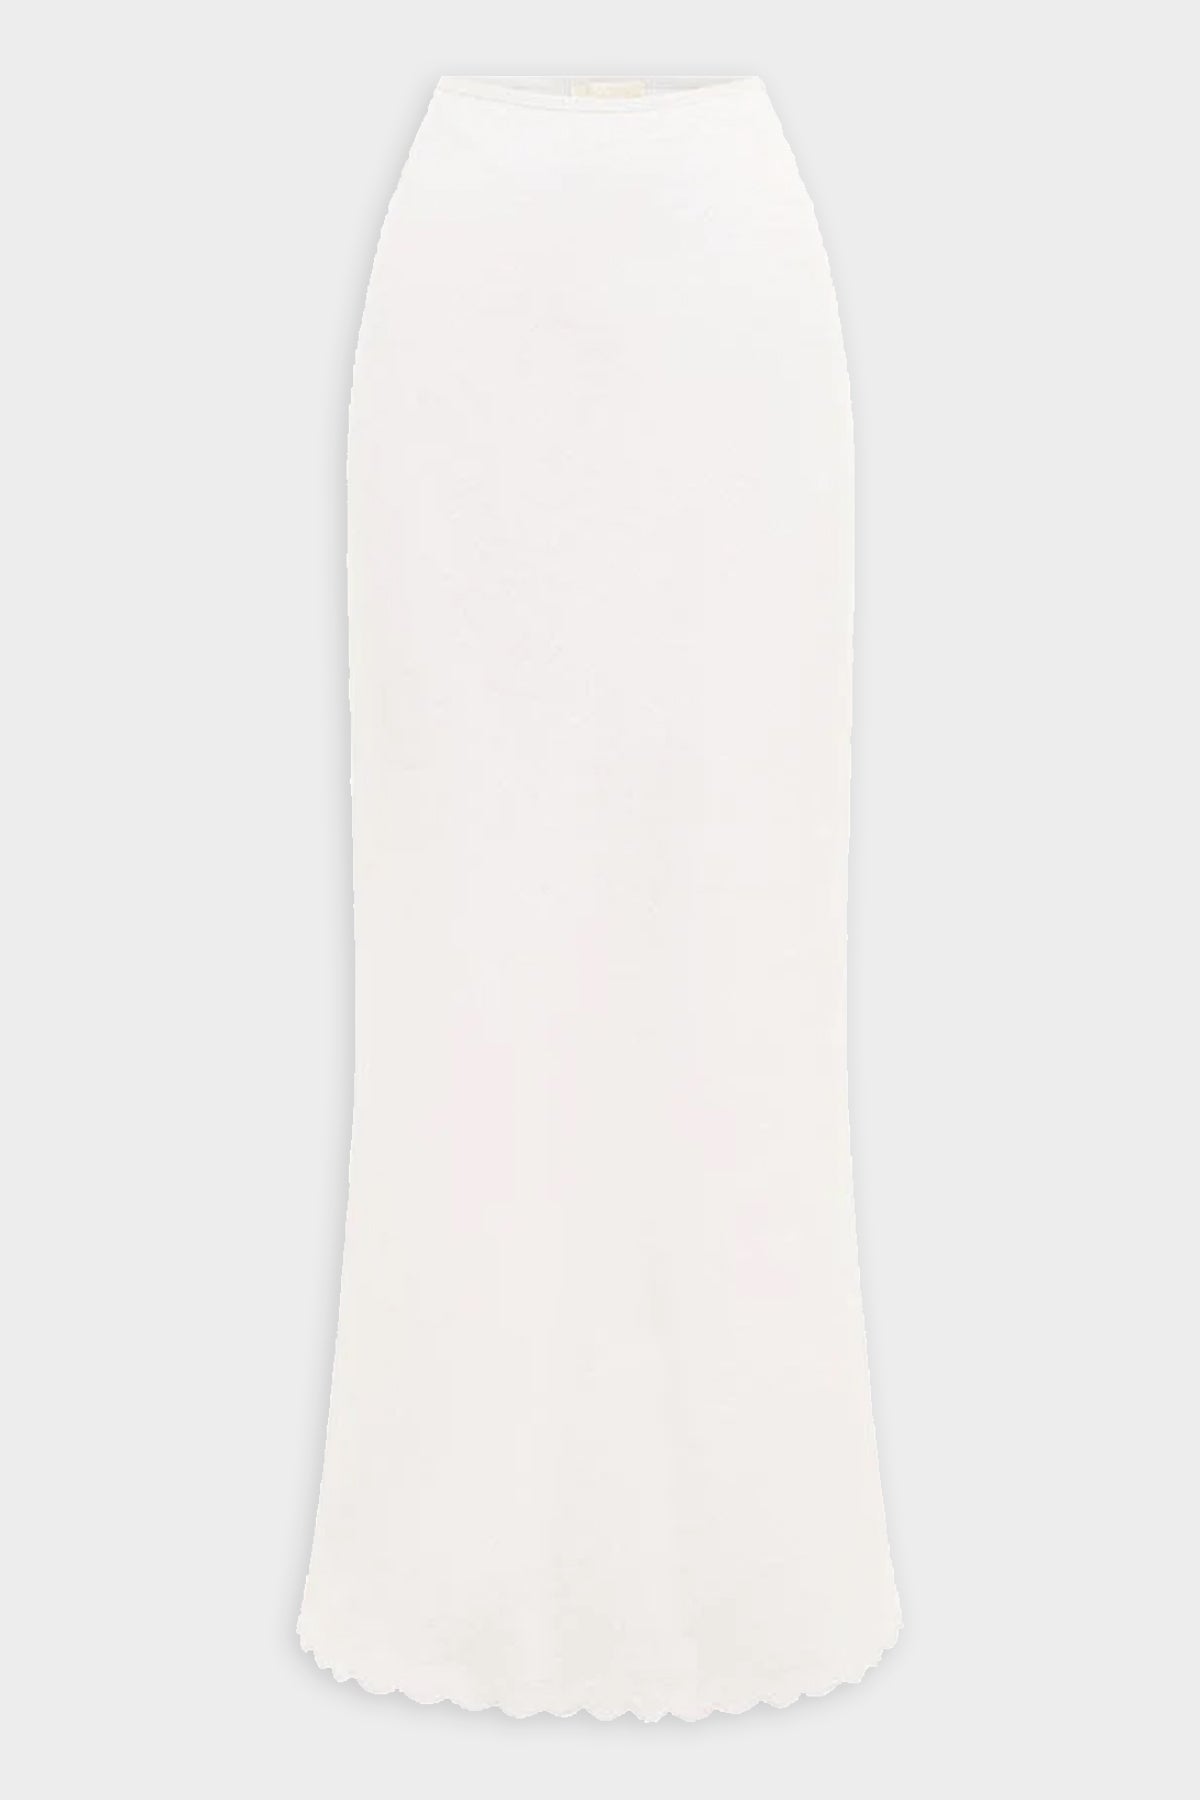 Zayla Skirt in Ivory - shop-olivia.com